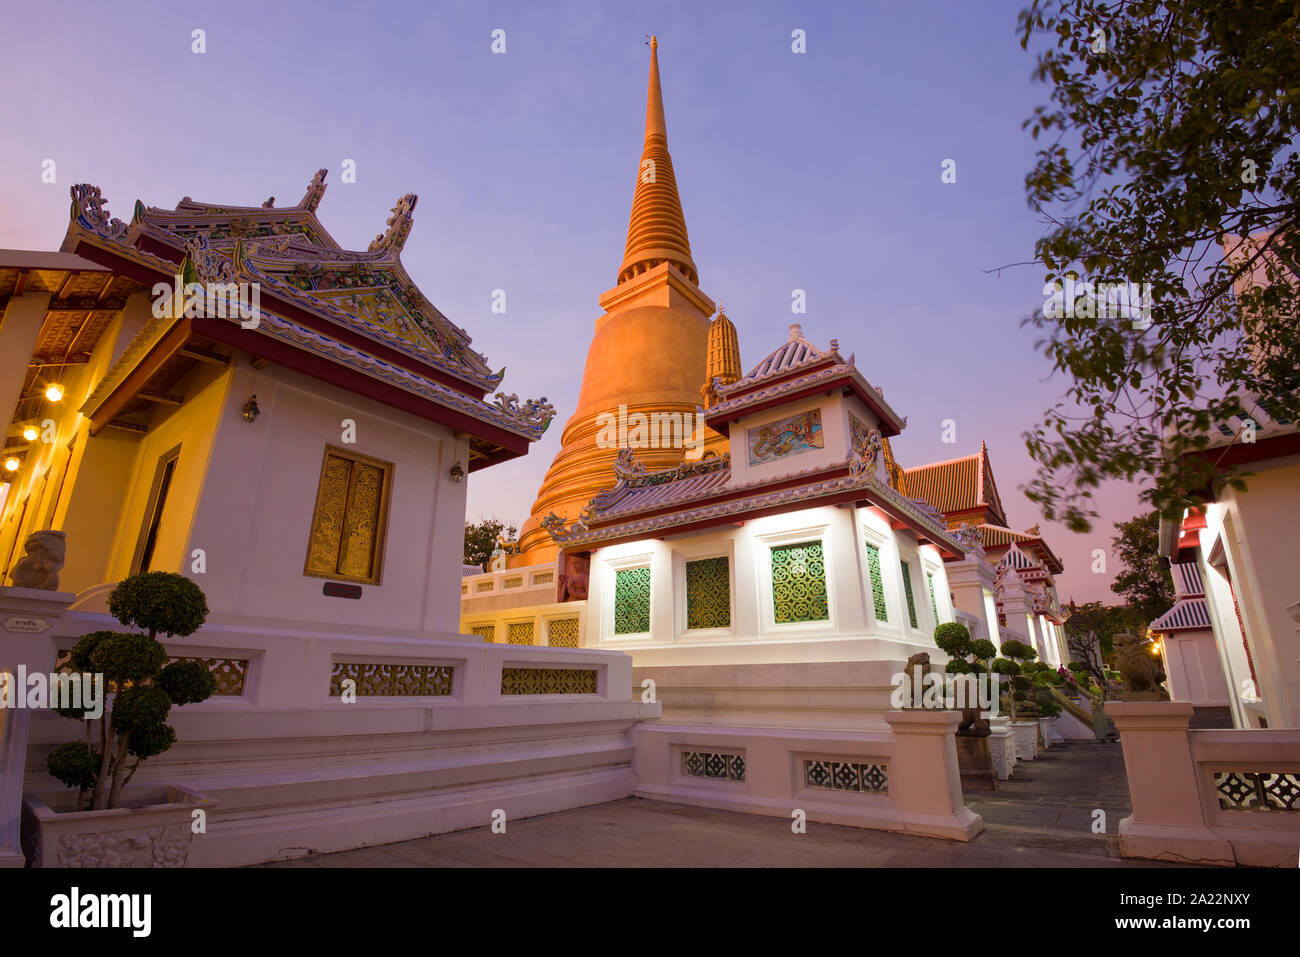 Crépuscule du soir dans le temple bouddhiste Wat Bowonniwet Vihara. Bangkok, Thaïlande Banque D'Images